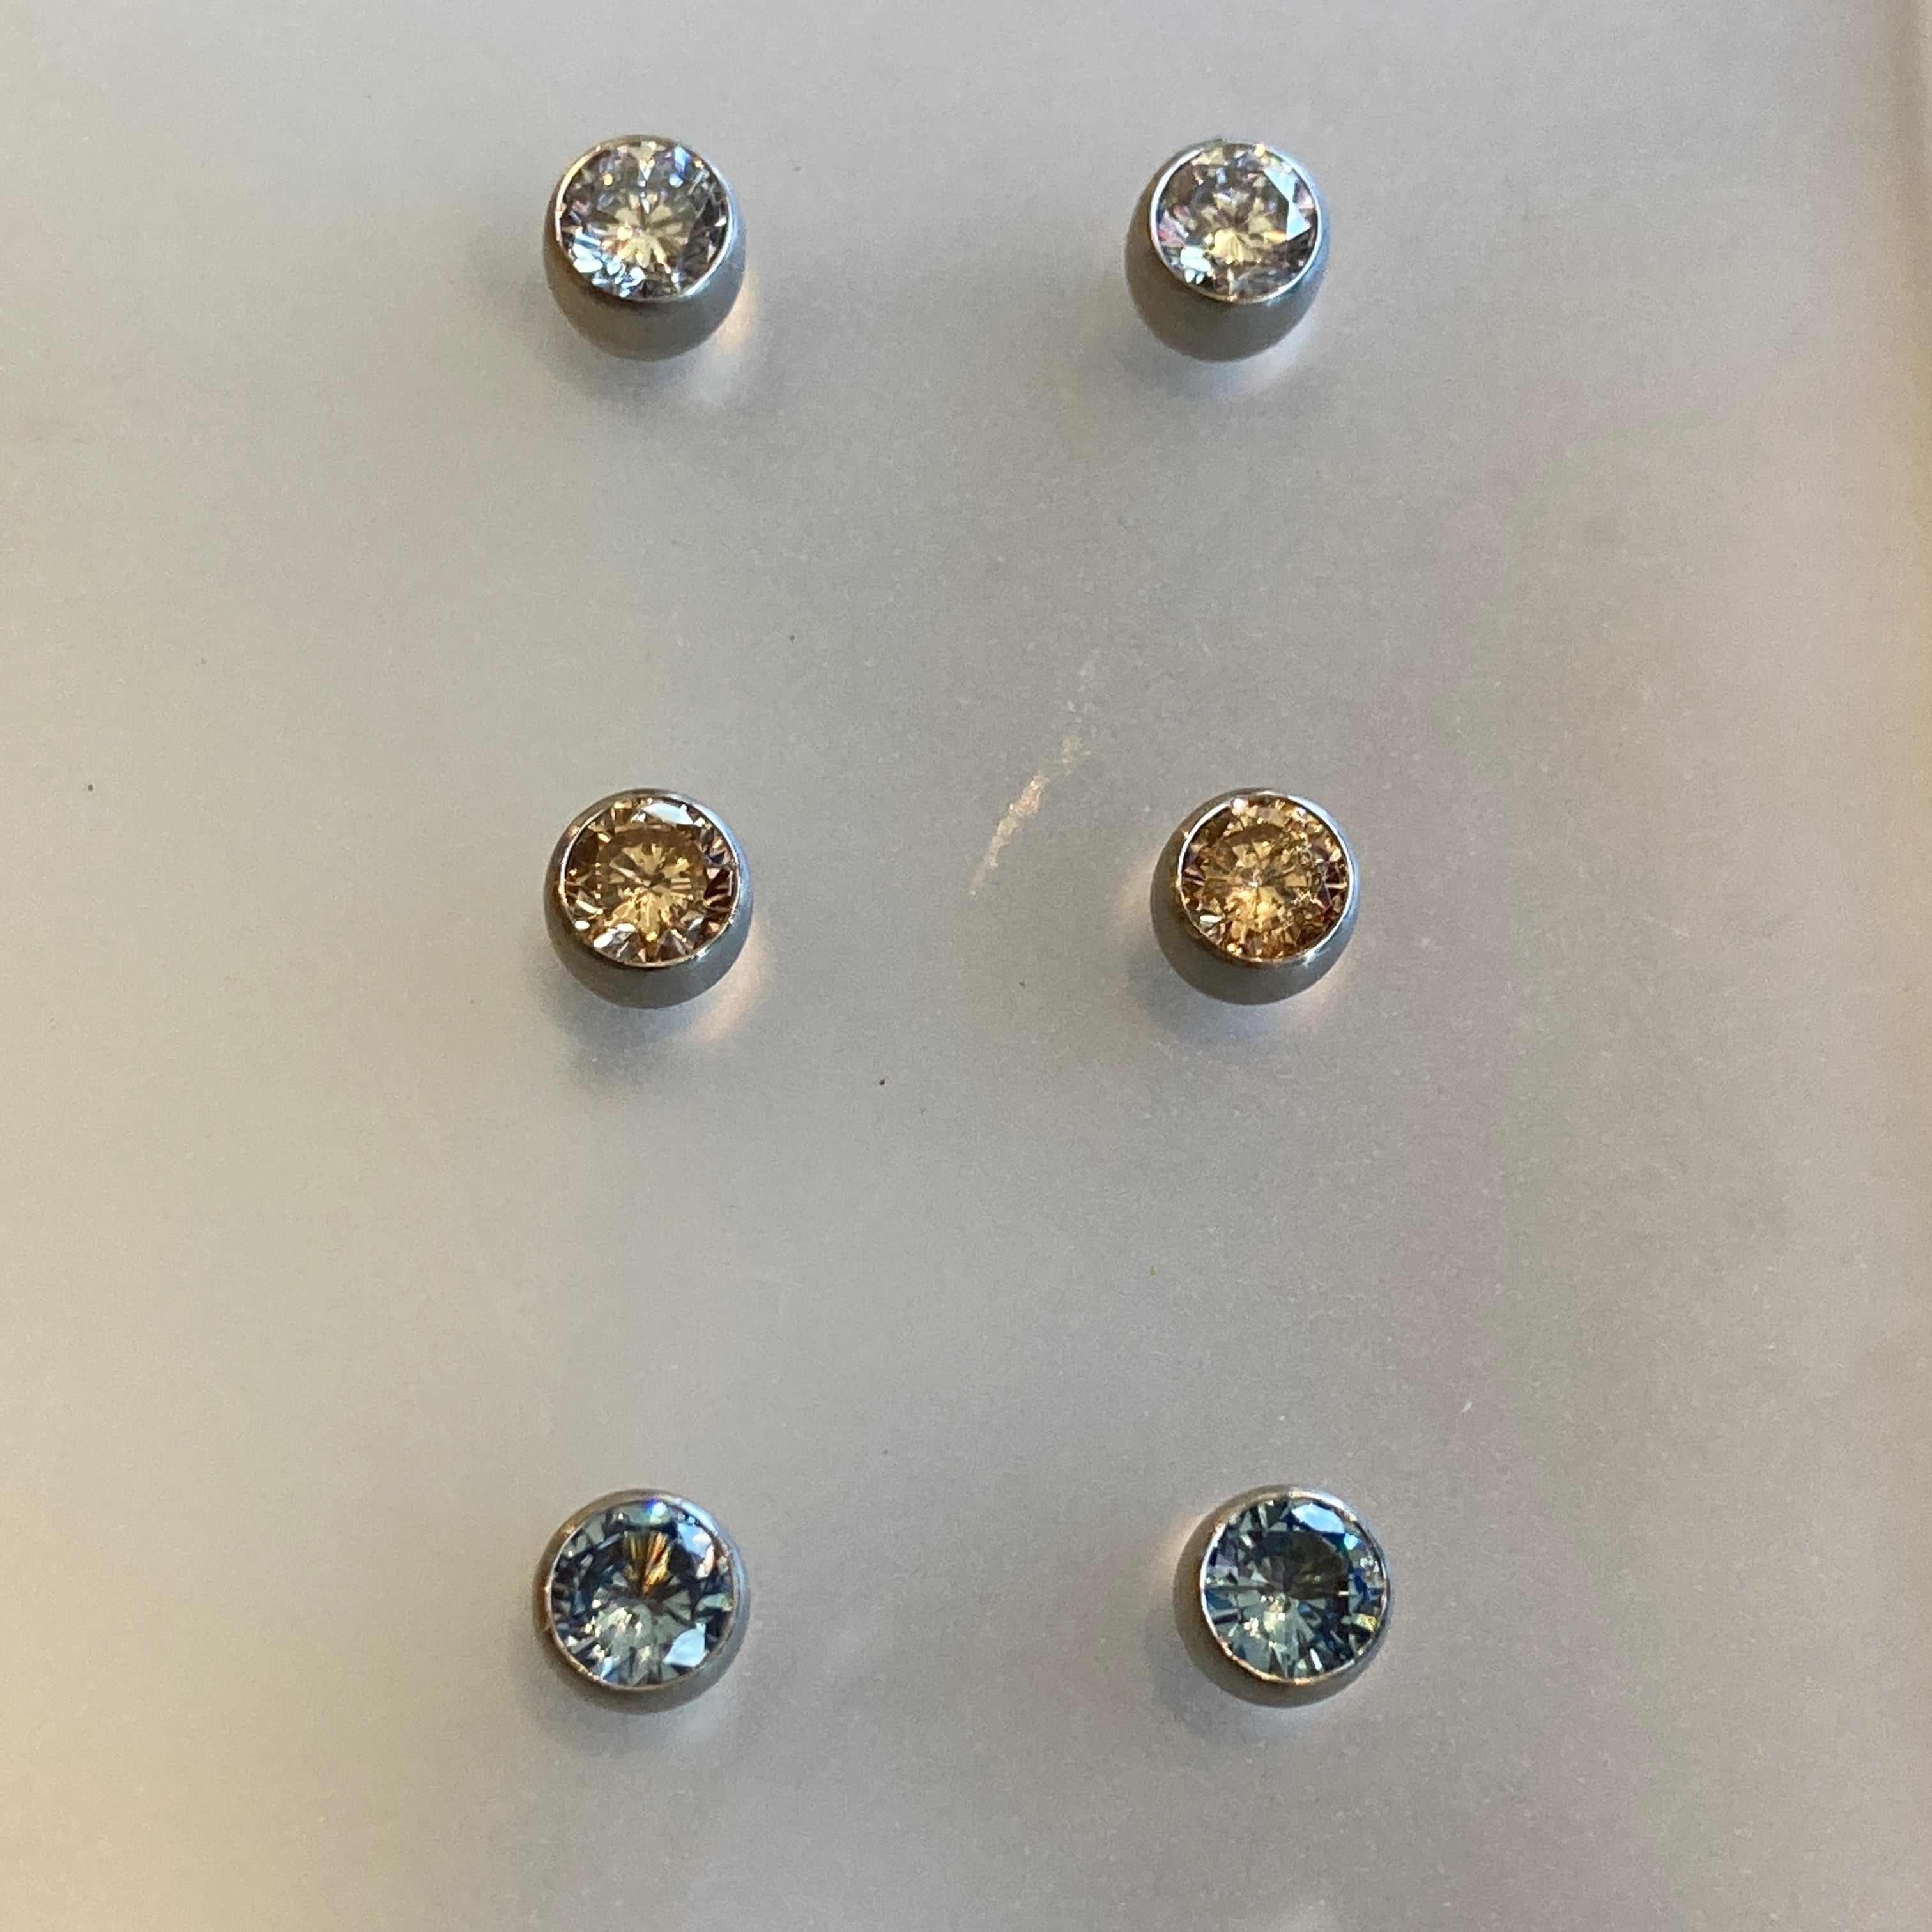 4mm Cubic Zirconium Steel Earrings